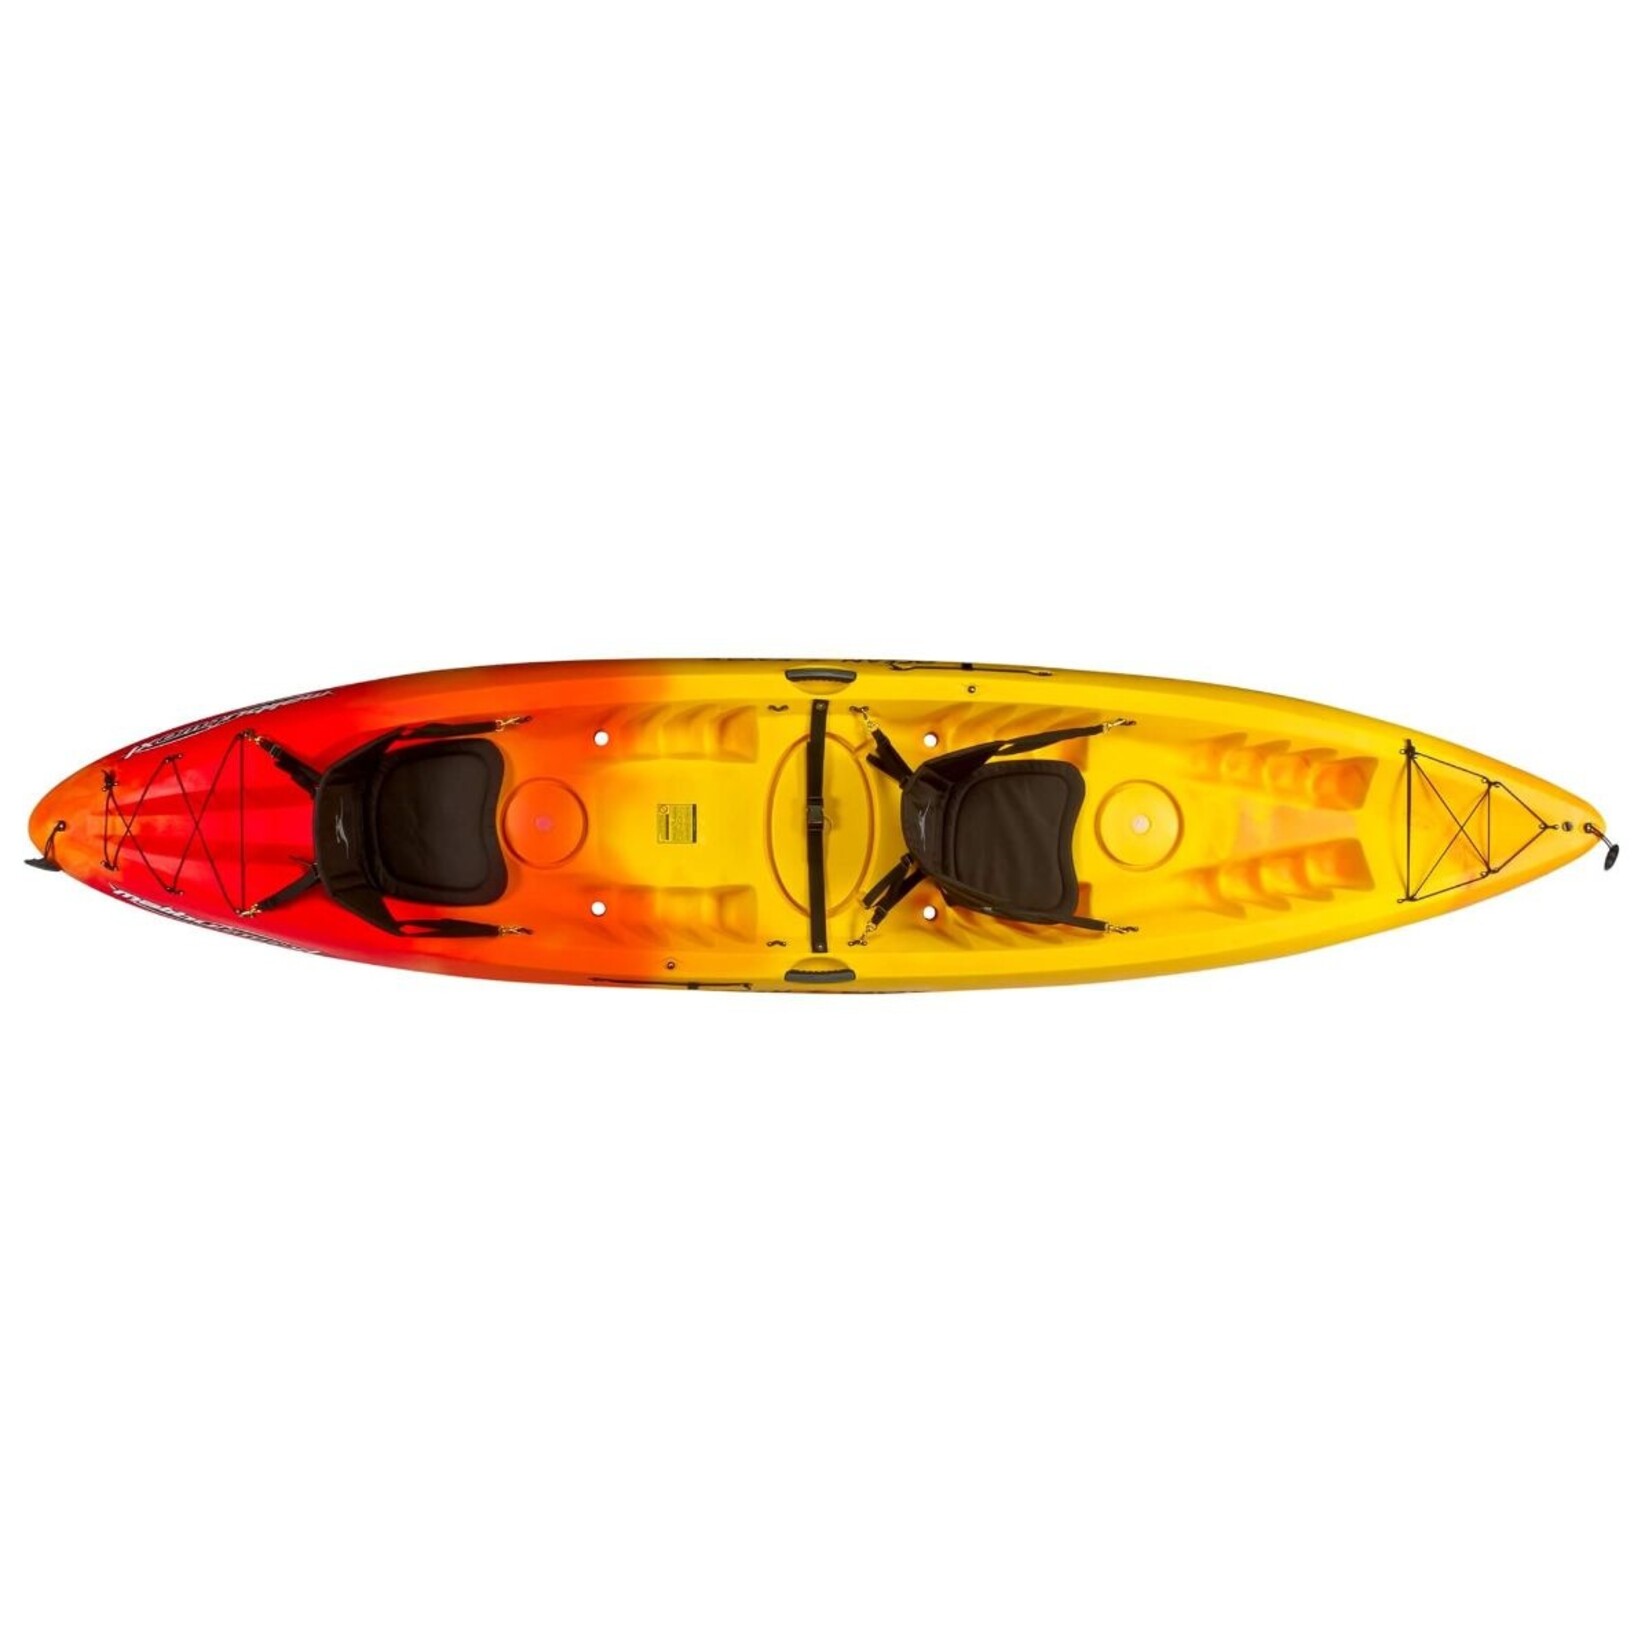 Ocean Kayak - Malibu Two XL